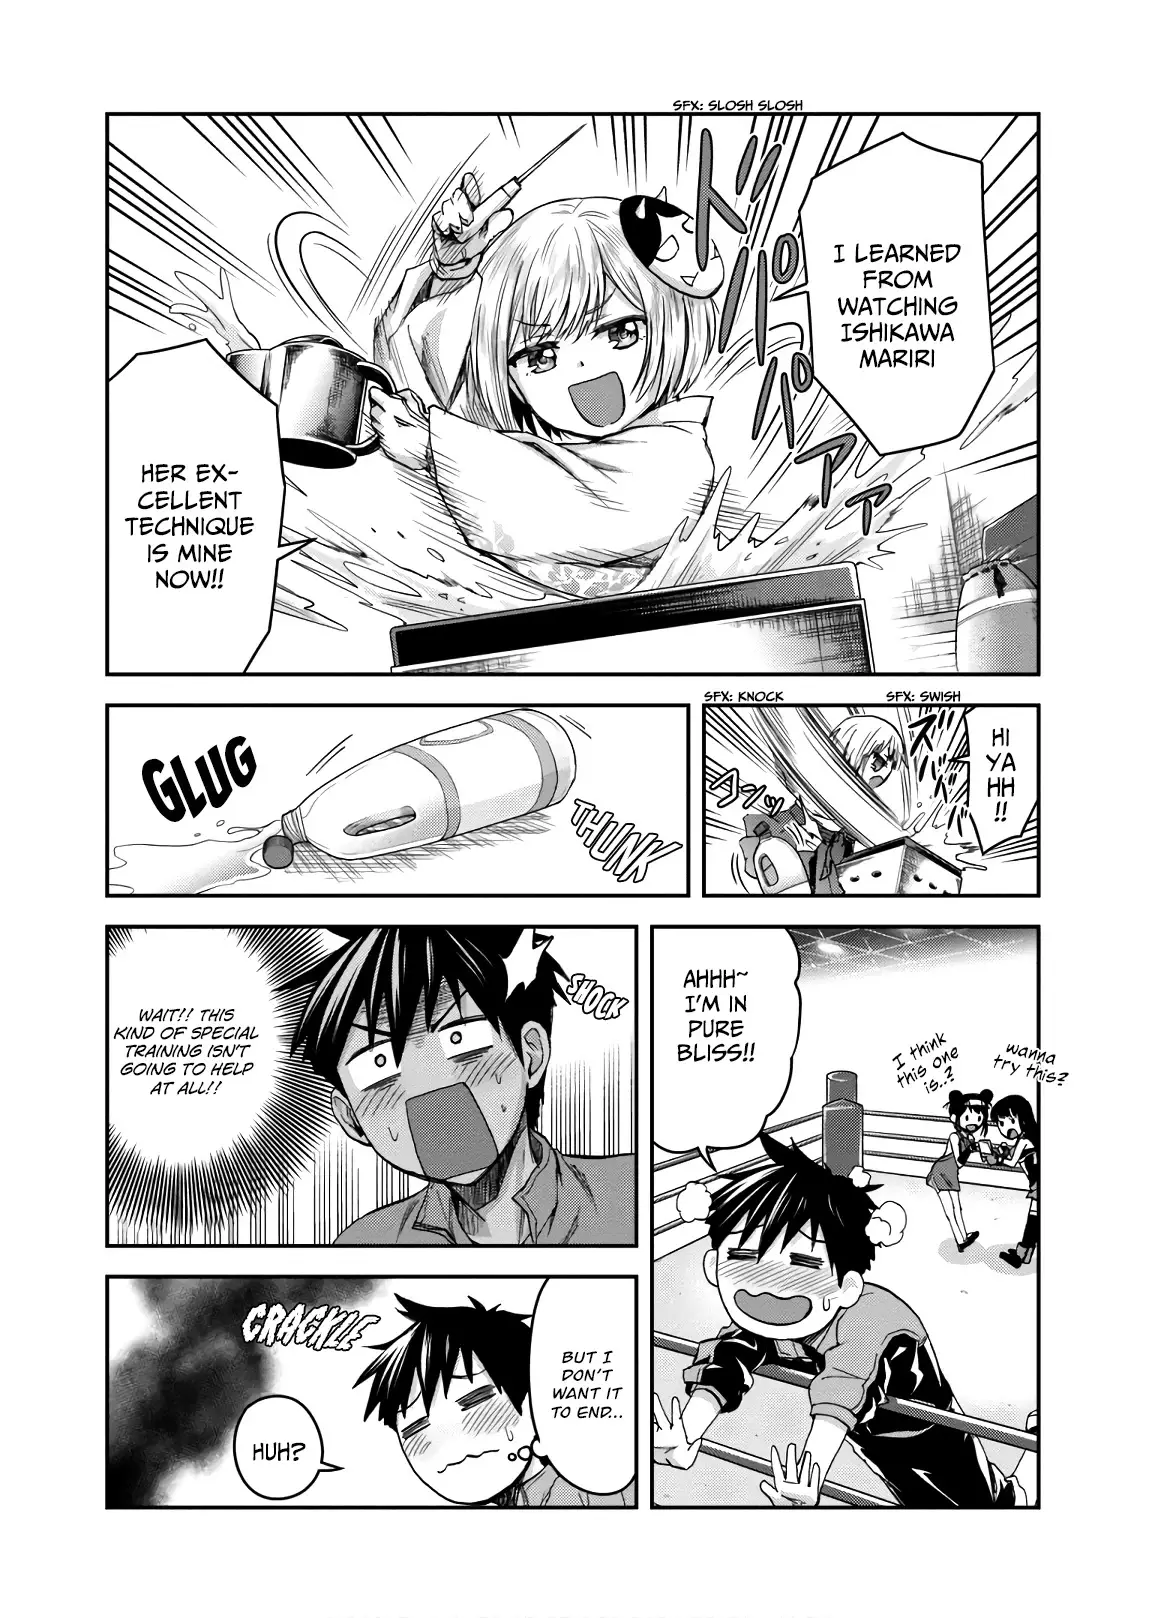 Shinobi Kill - 7 page 23